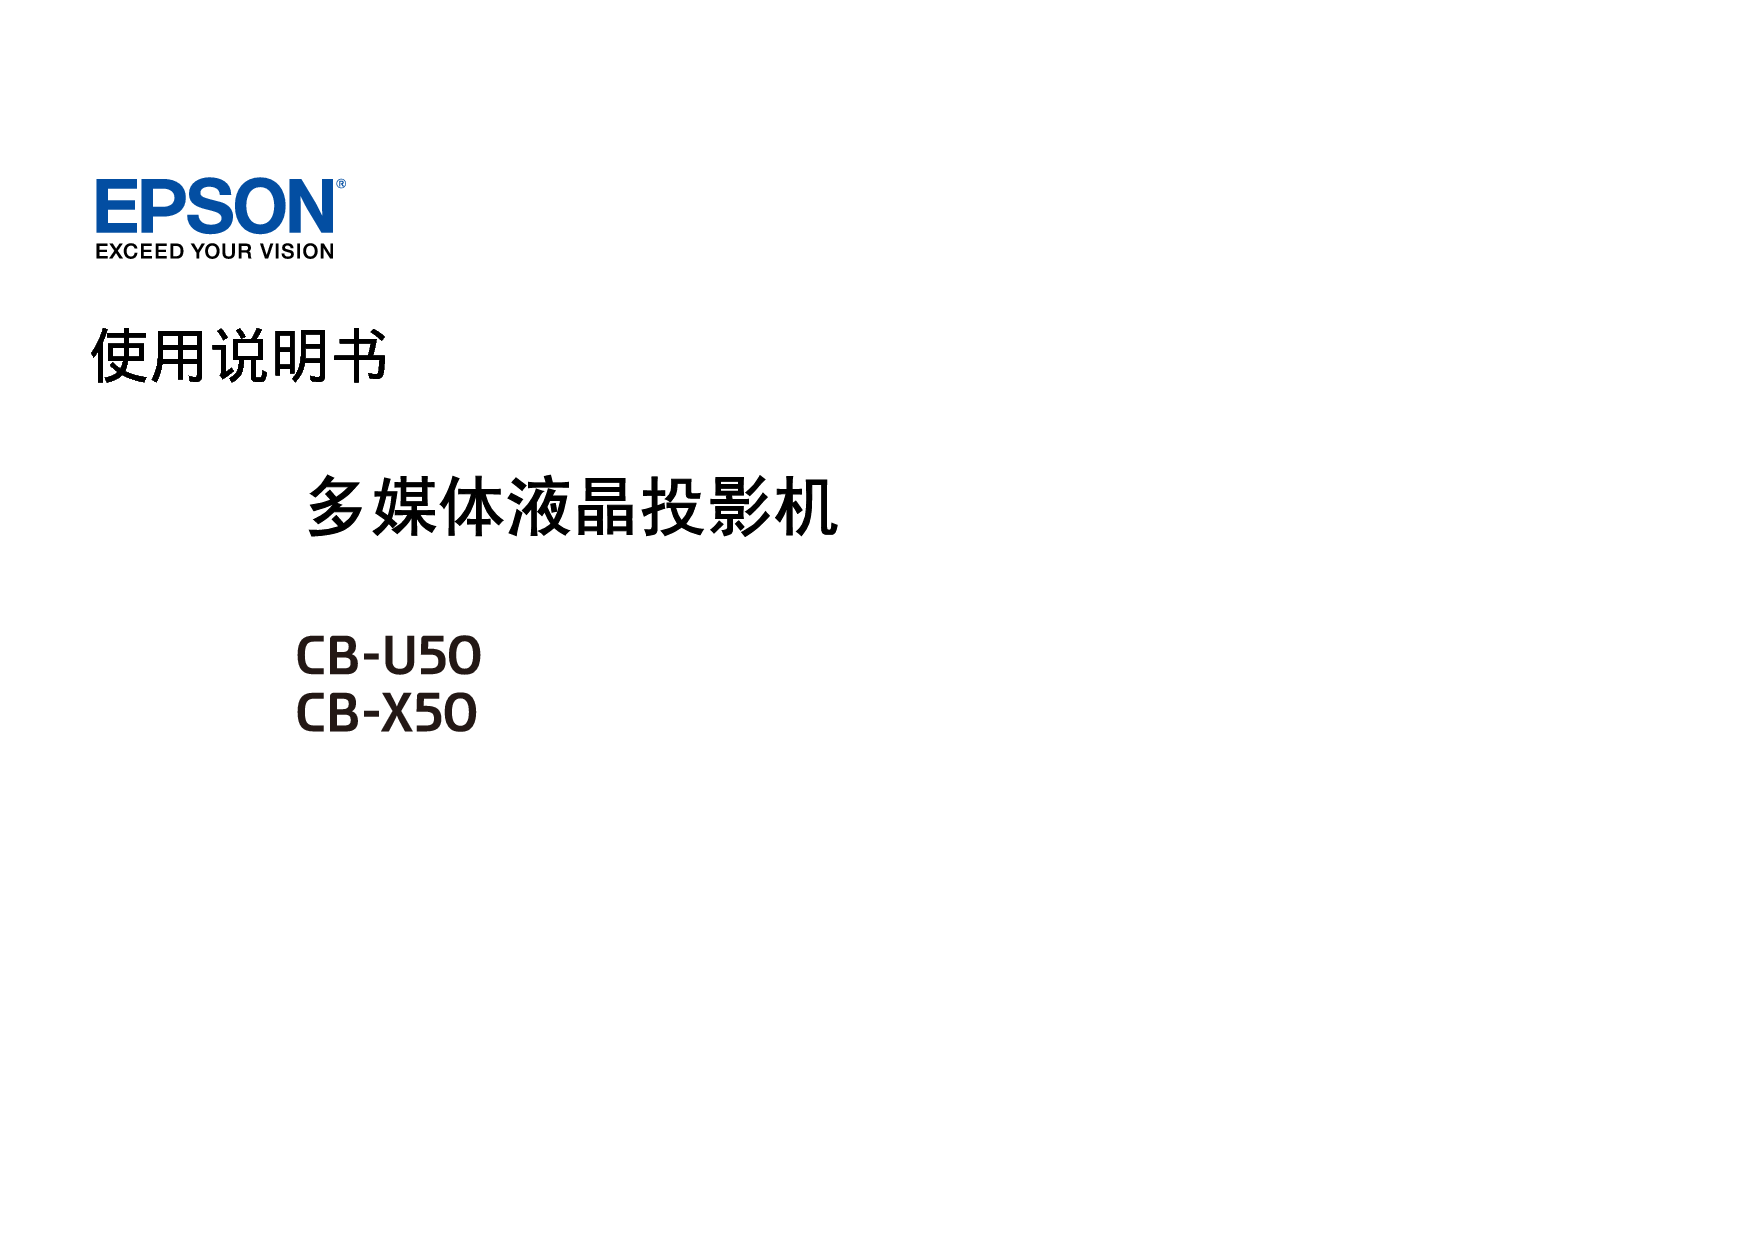 爱普生 Epson CB-U50 使用说明书 封面